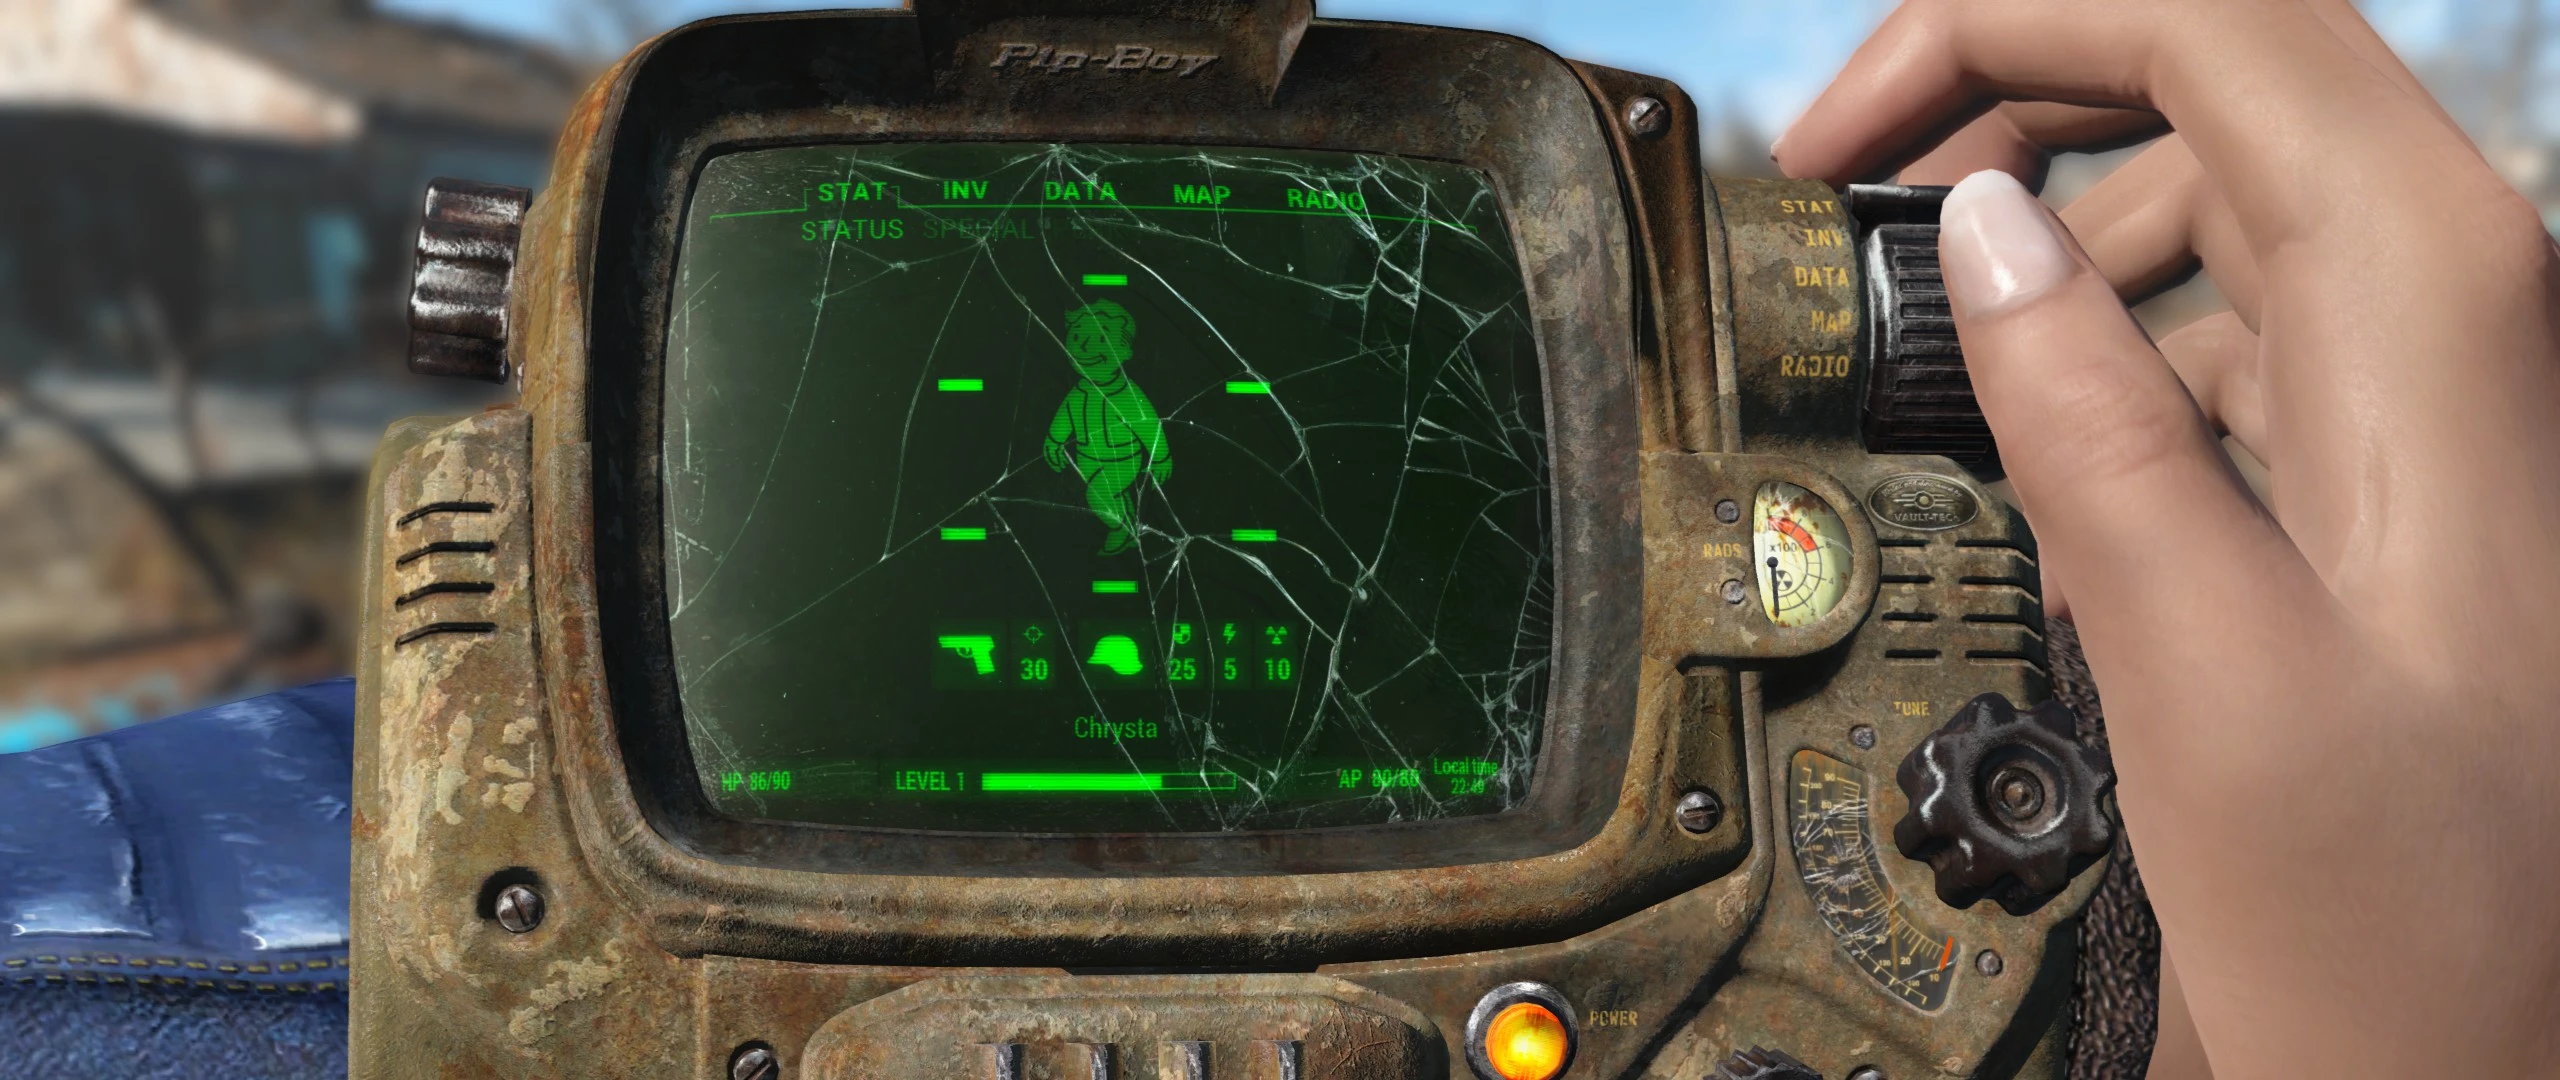 Fallout 4 аксессуары на руку фото 23